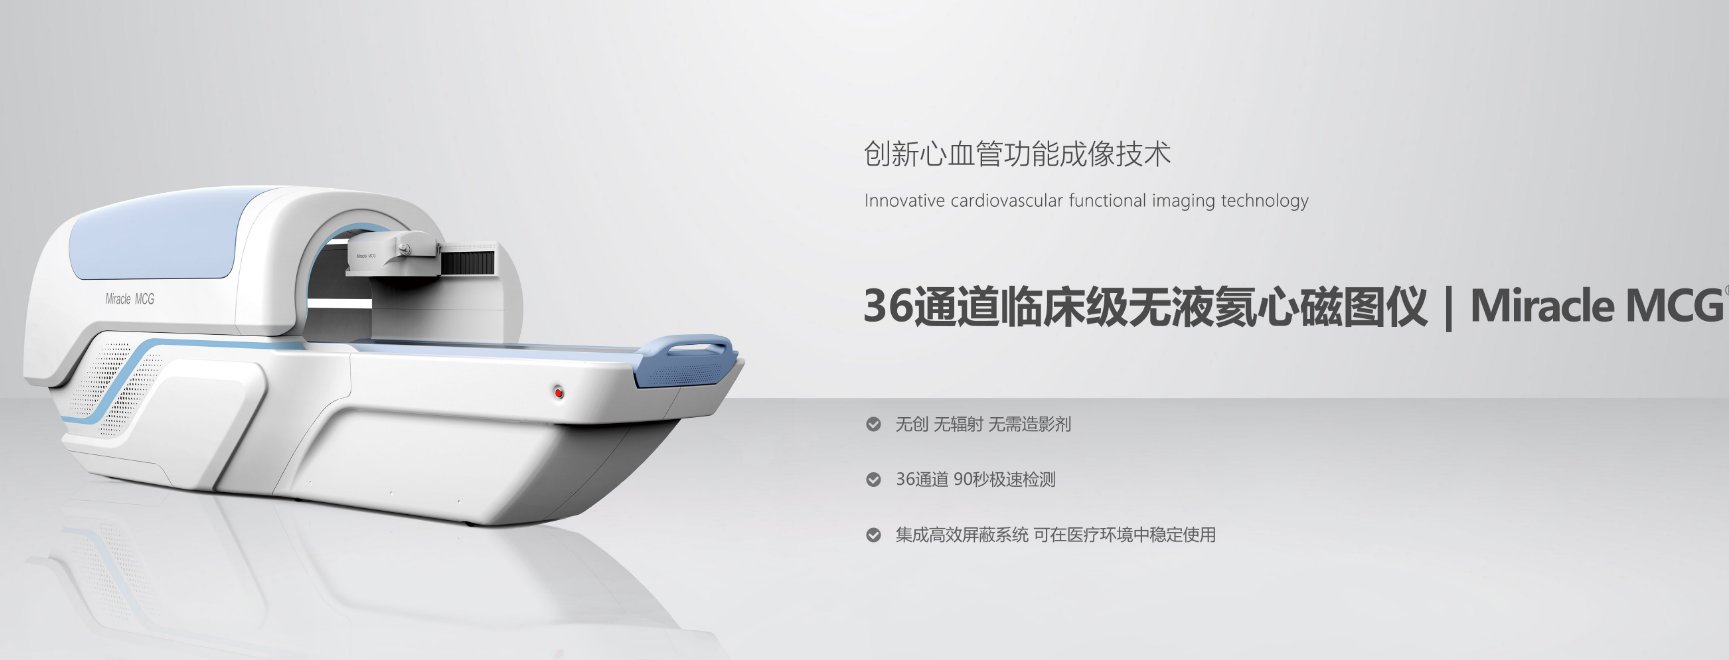 展商推荐：北京未磁科技有限公司致力于提供弱磁测量全面解决方案